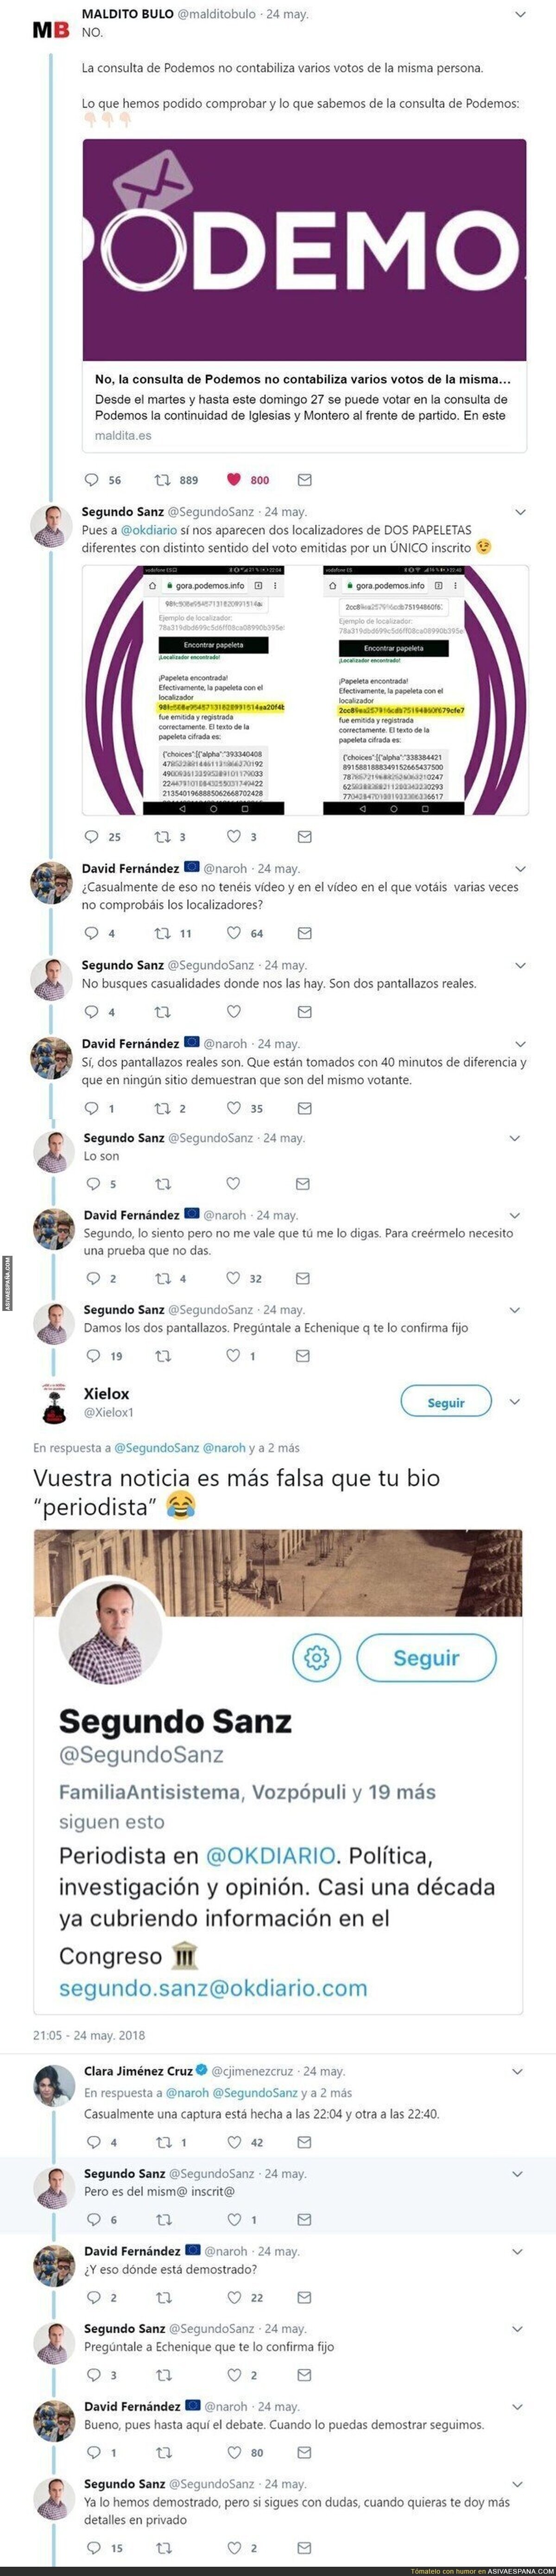 Pillan a "periodista" de Okdiario, compartiendo capturas falsas para intentar desmentir a Maldito Bulo sobre Podemos